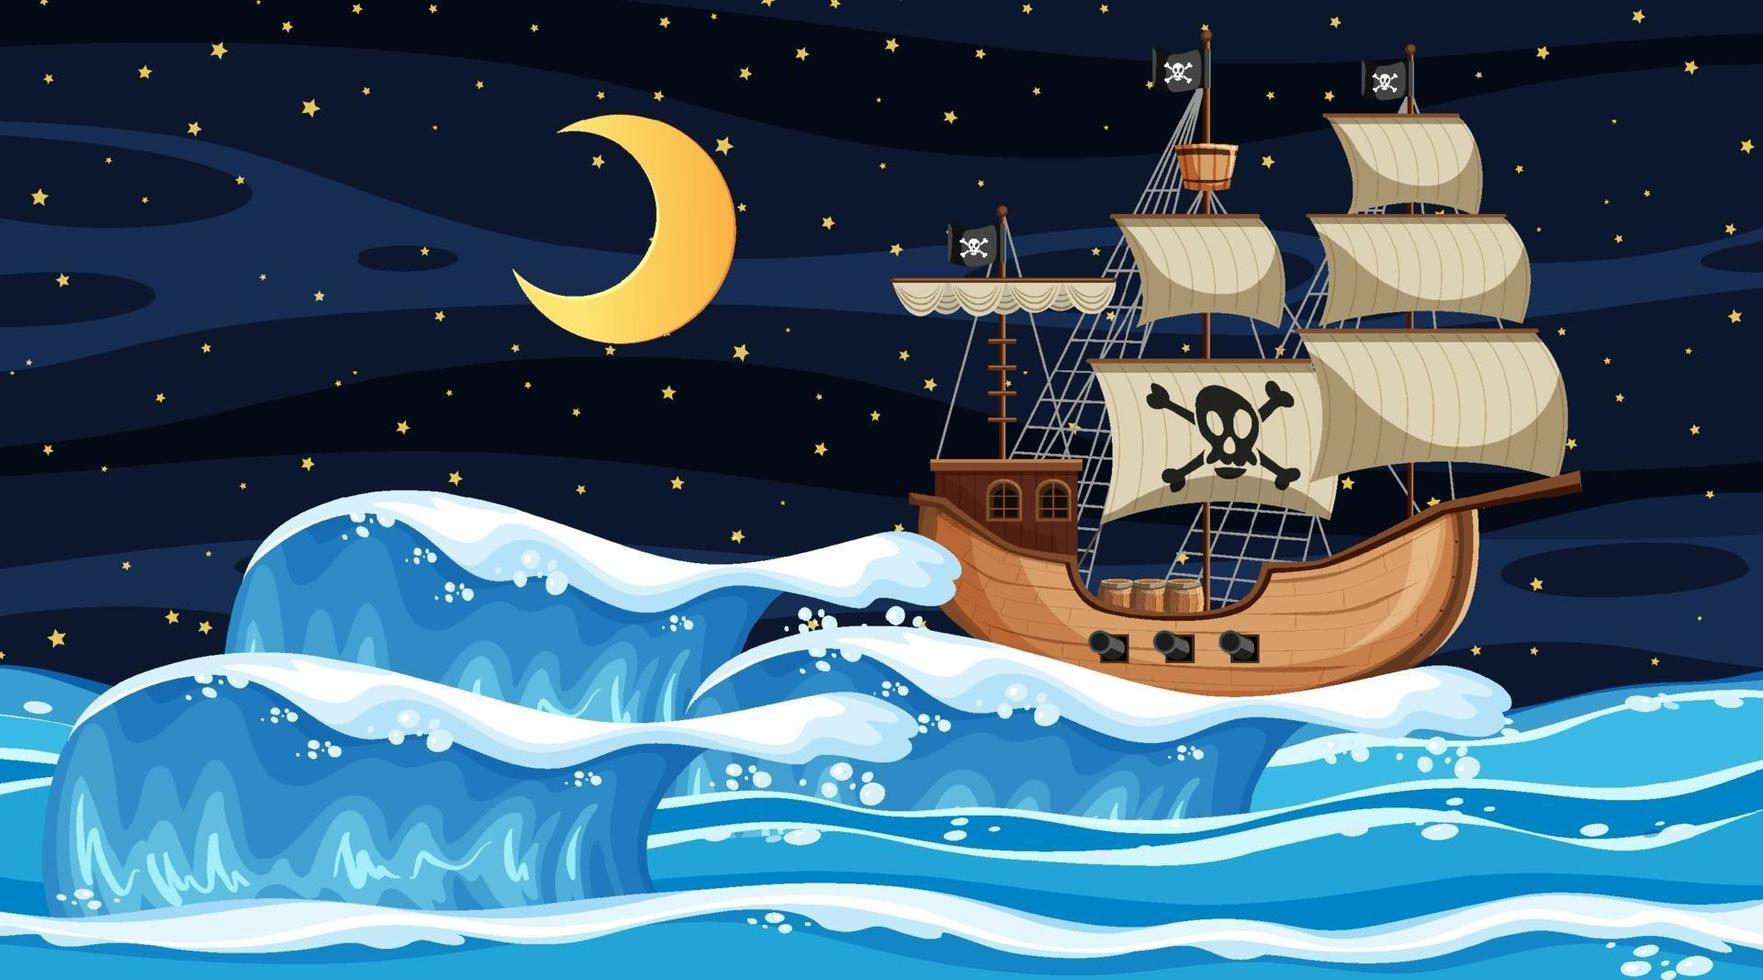 escena del océano en la noche con barco pirata en estilo de dibujos animados vector